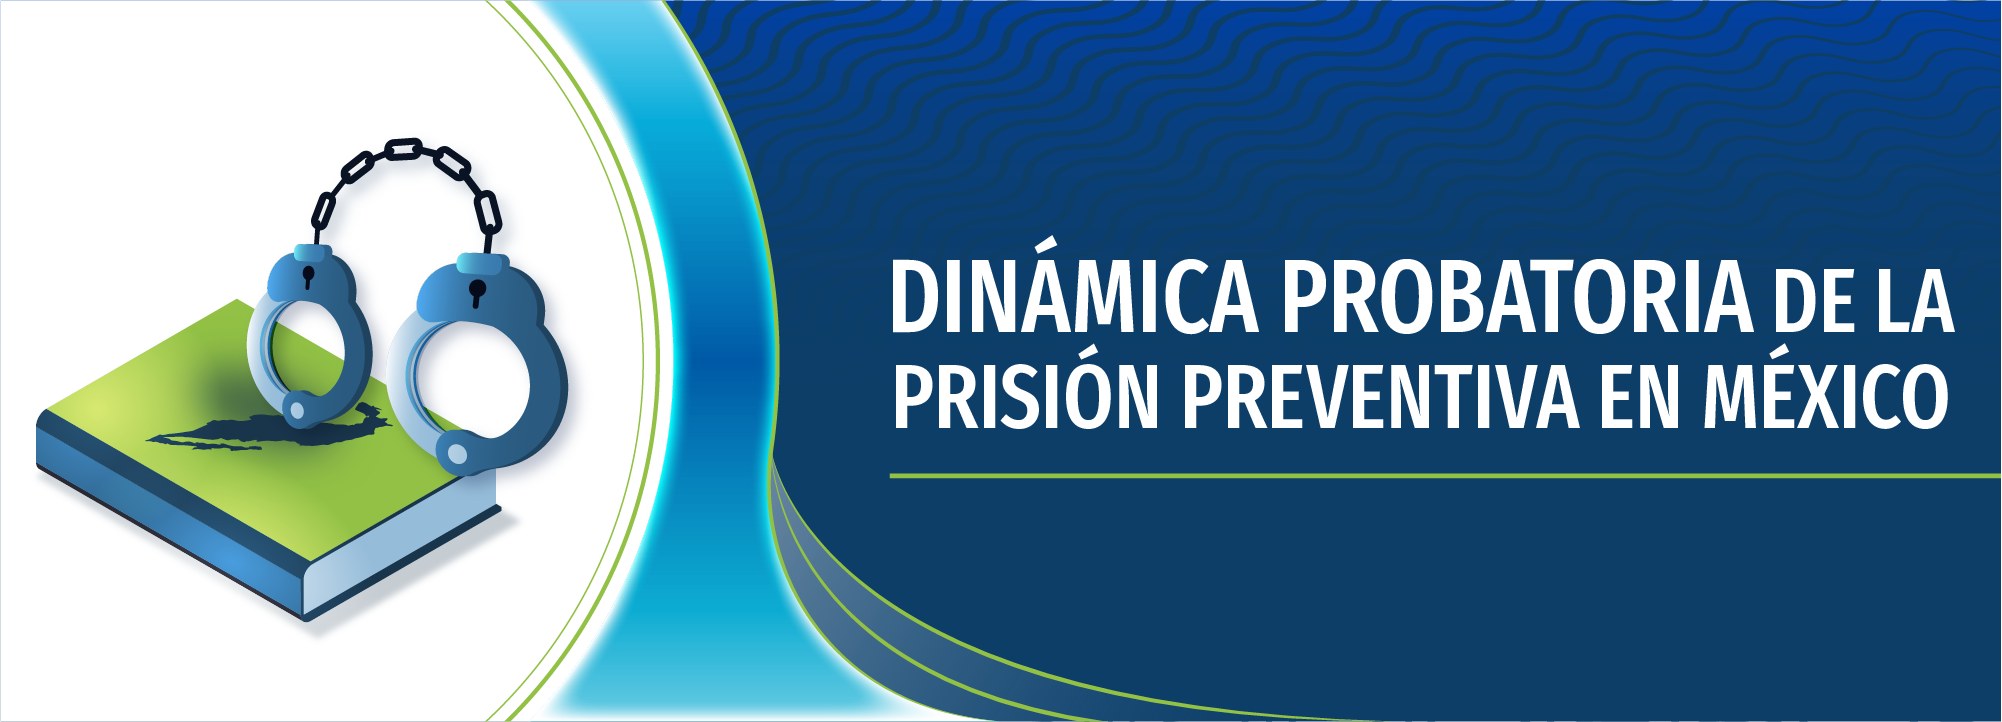 Dinámica probatoria de la prisión preventiva en México IEJ-0002